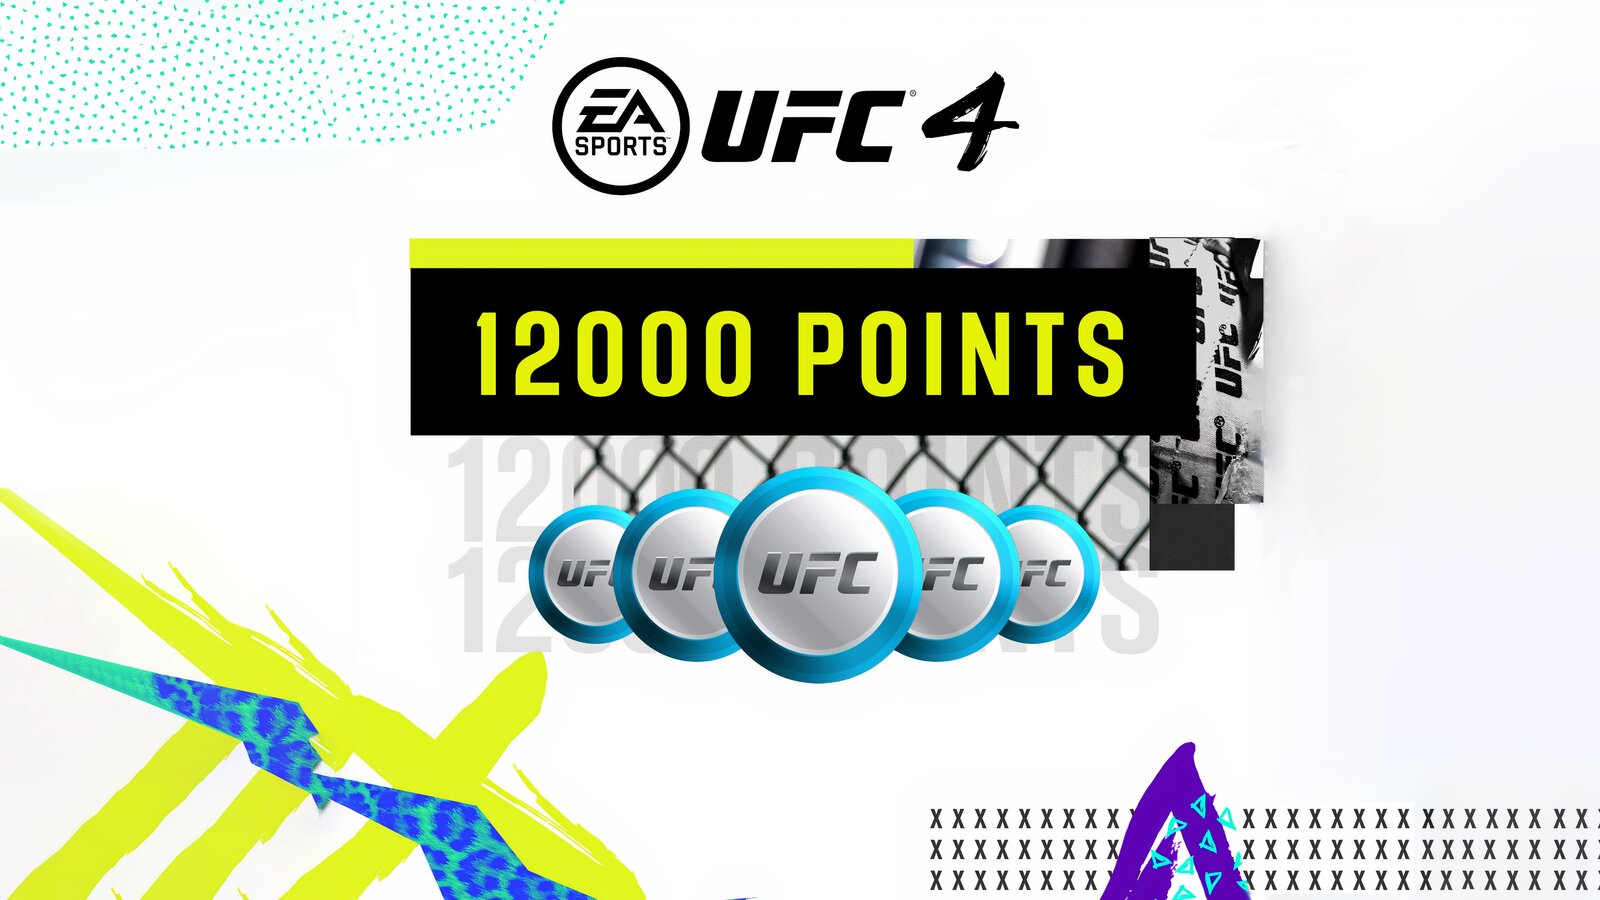 UFC 4 - 12000 UFC POINTS